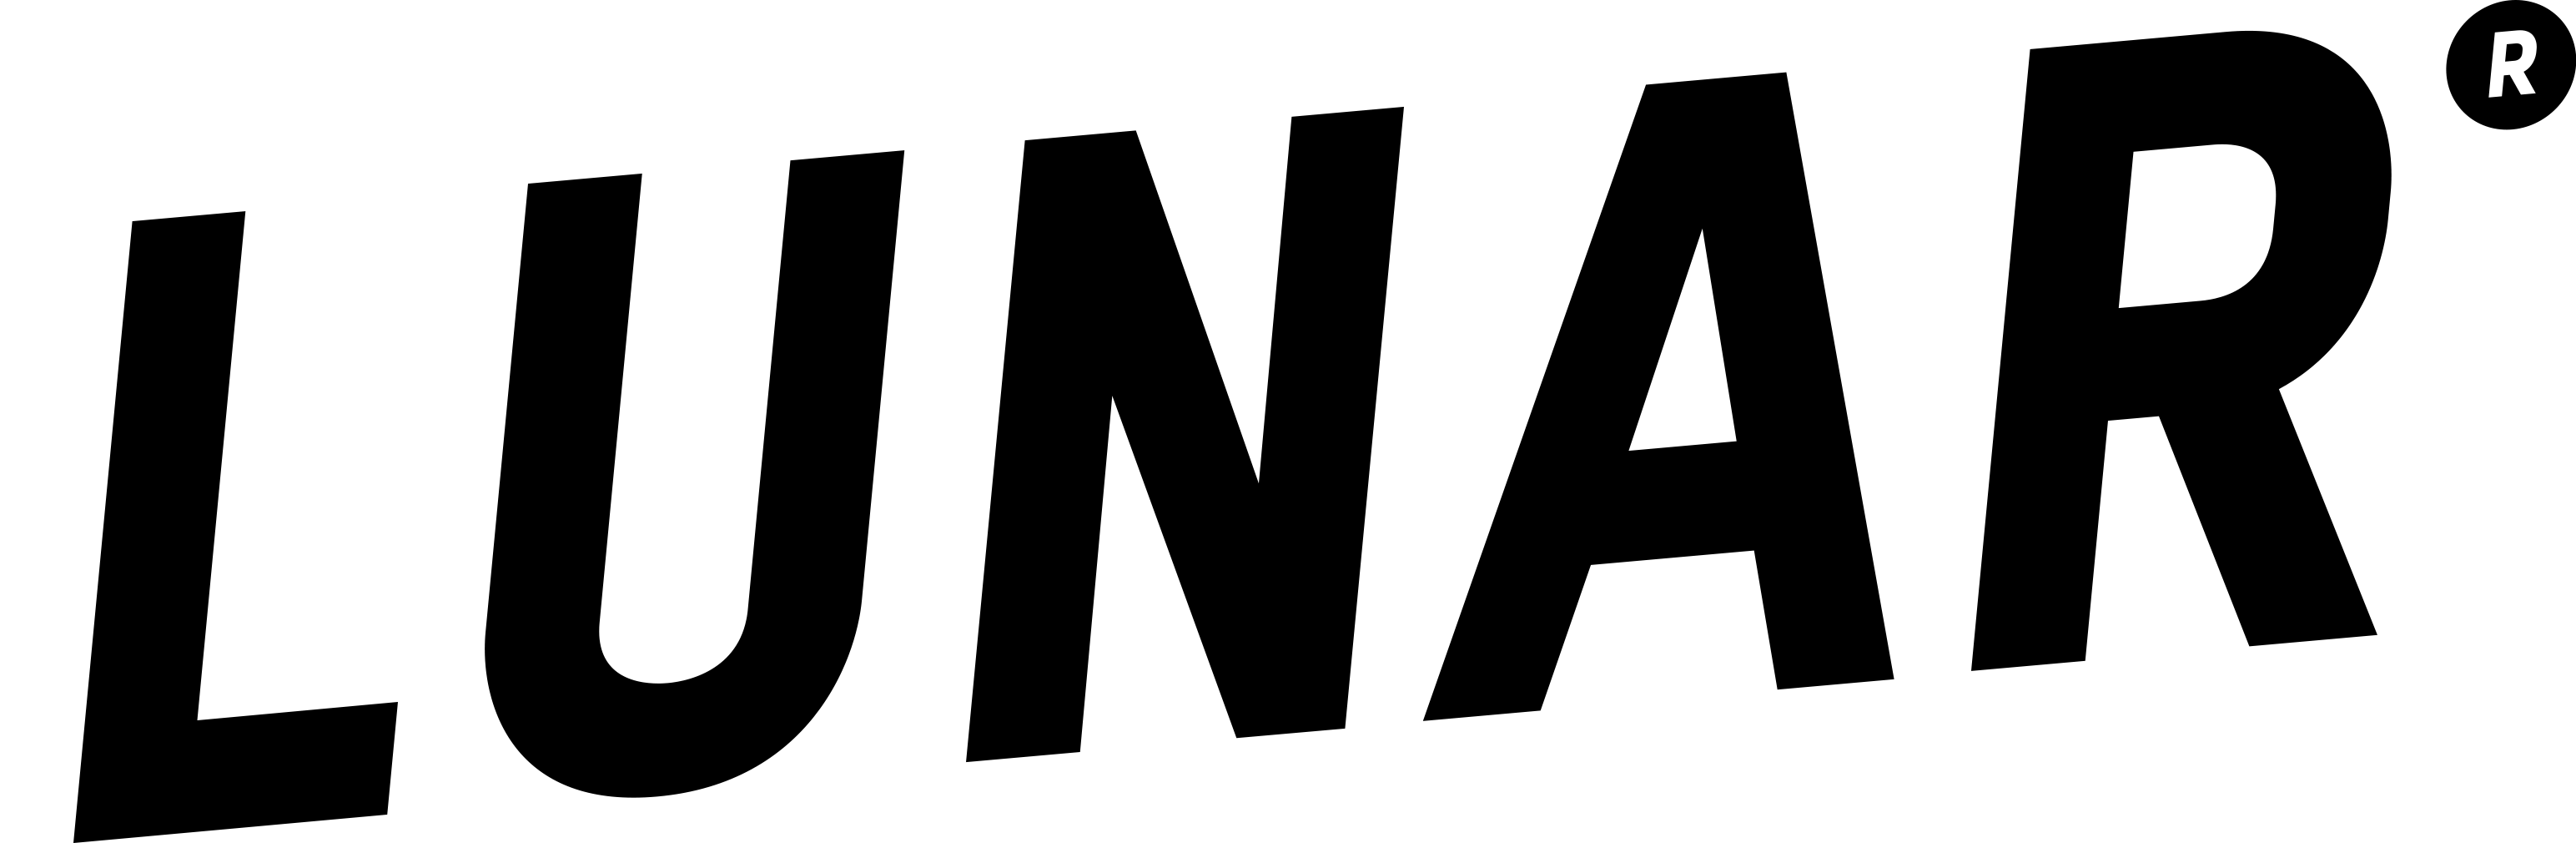 Lunar’s logo